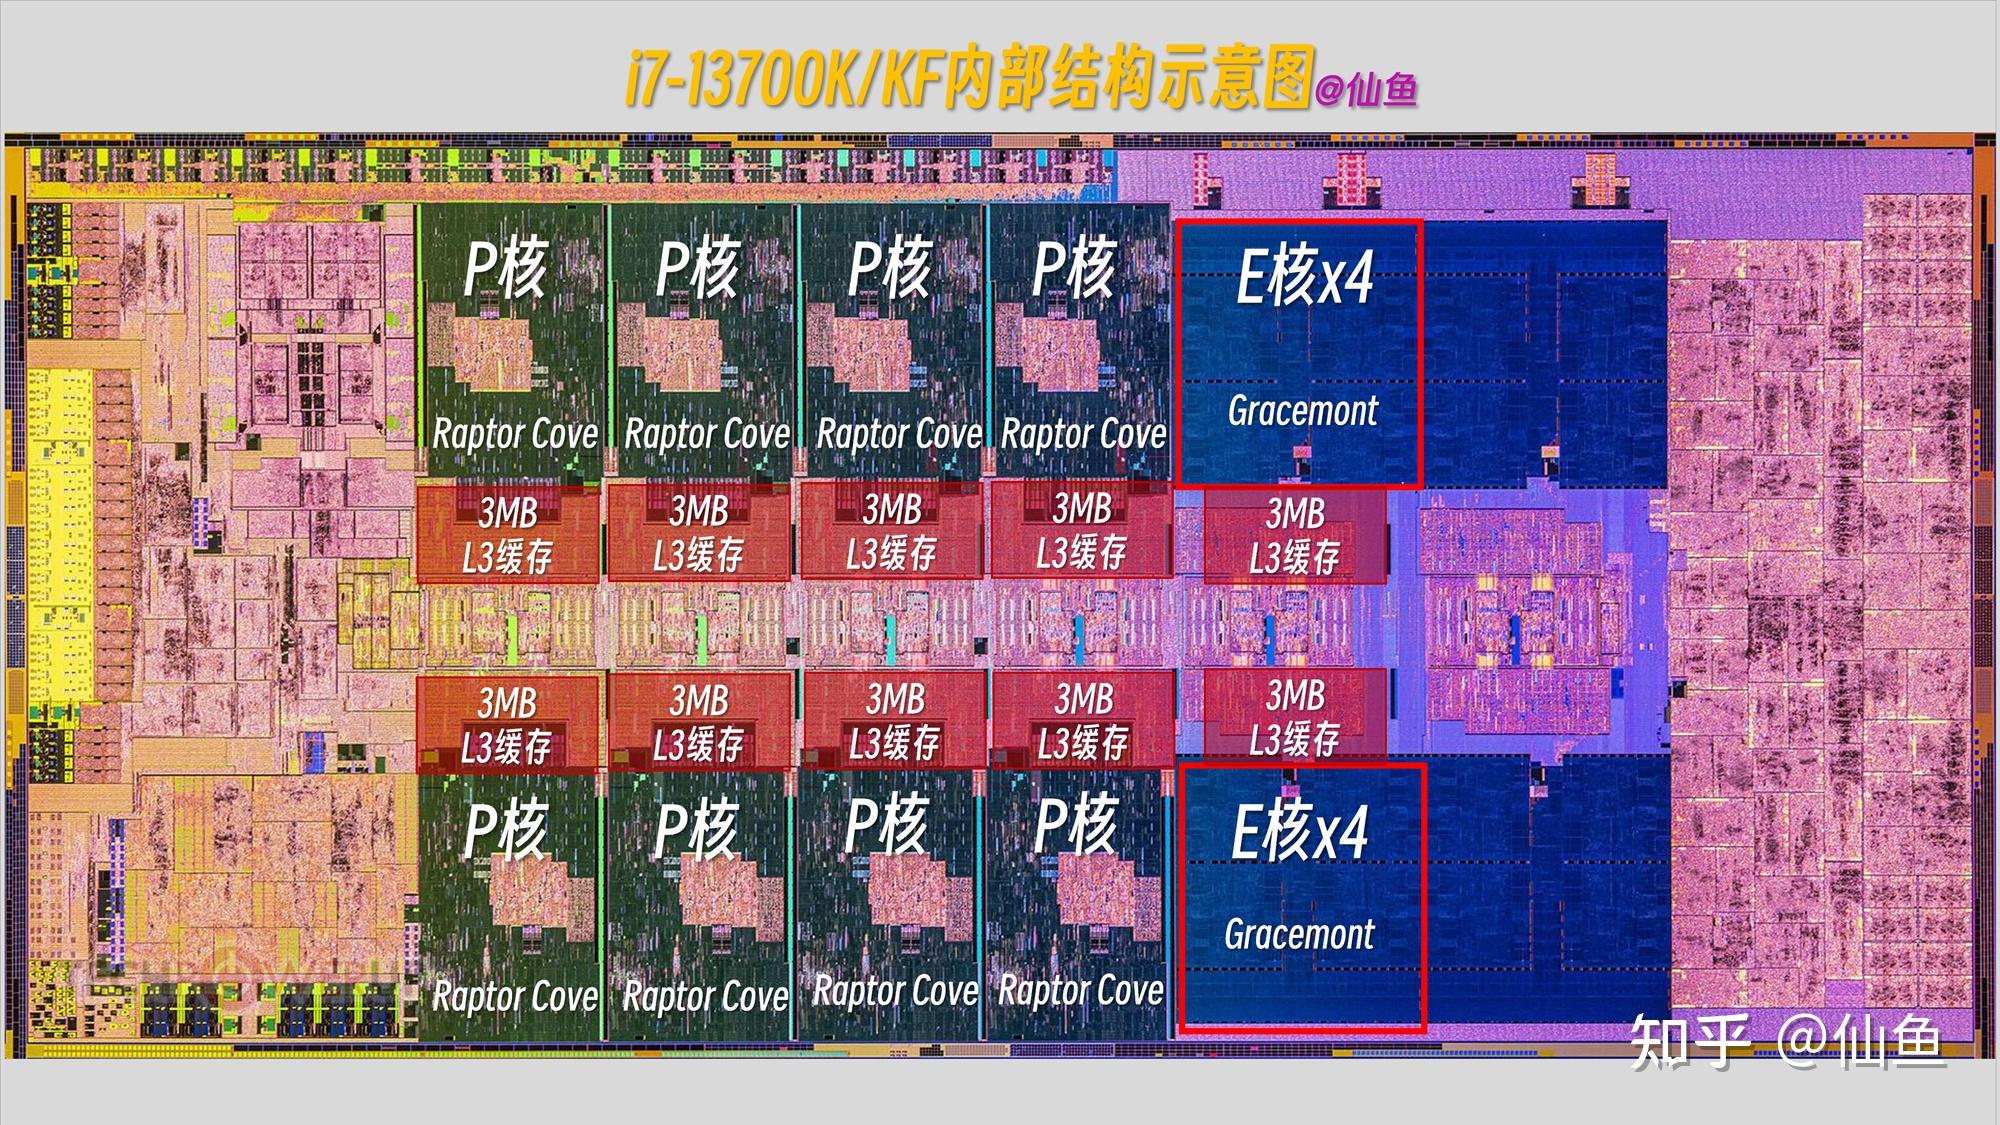 DDR5与DDR4内存技术对比：性能差异与应用场景的深度解析  第10张